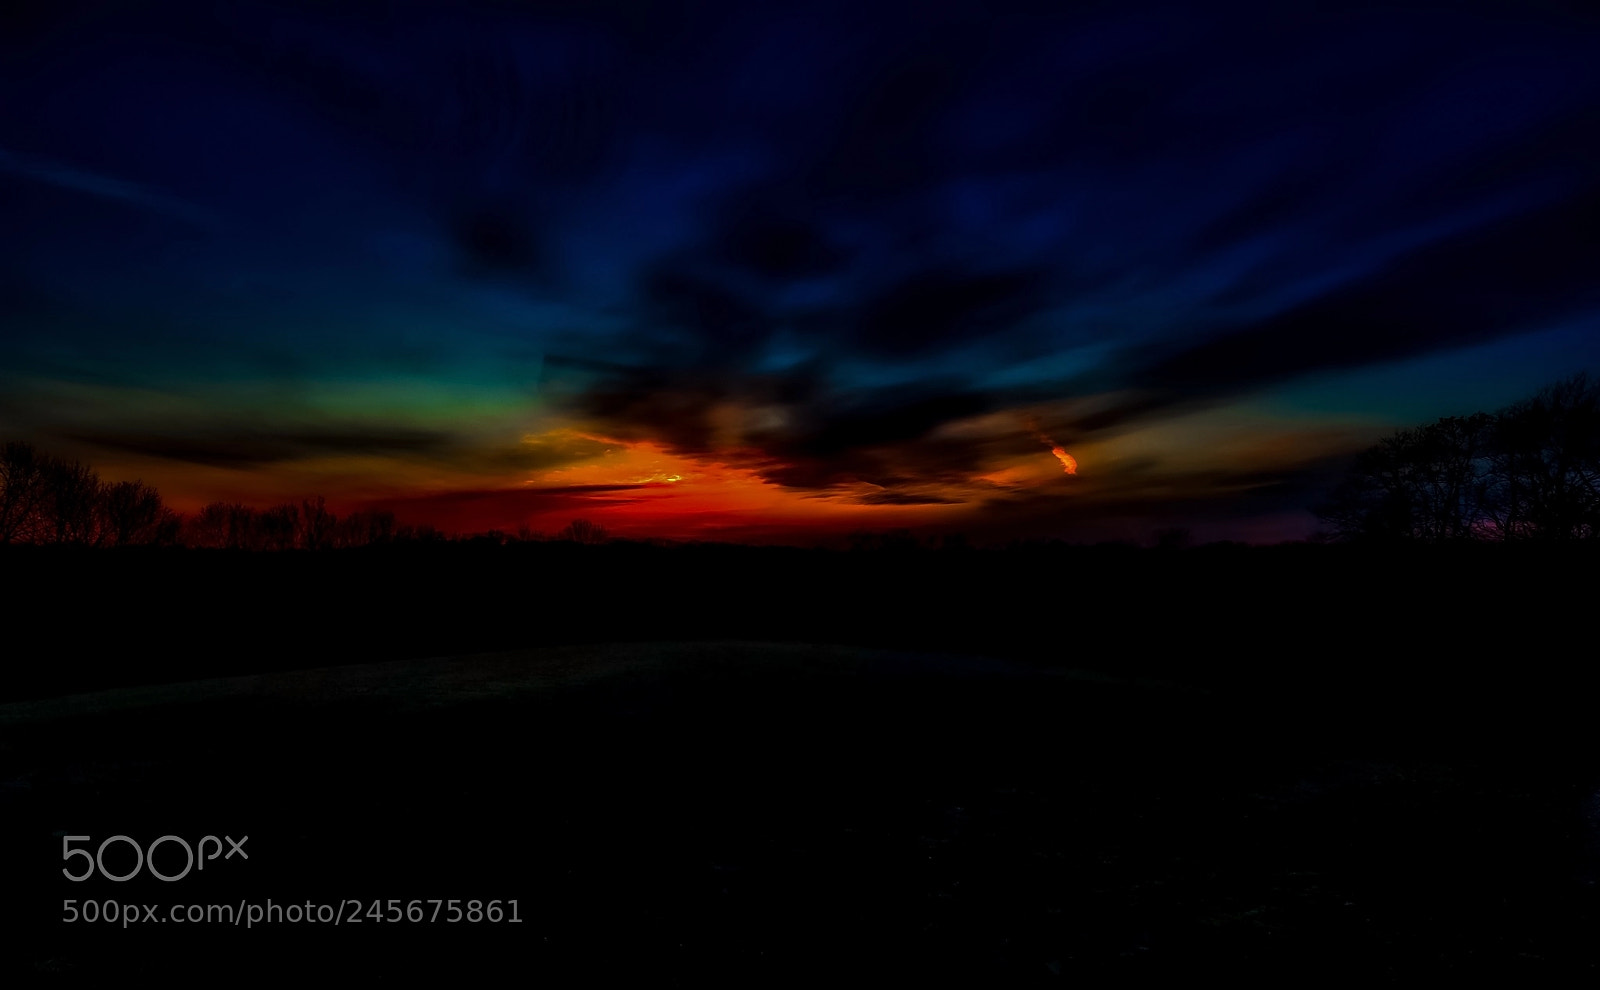 Nikon D700 sample photo. Spectacular sunset photography